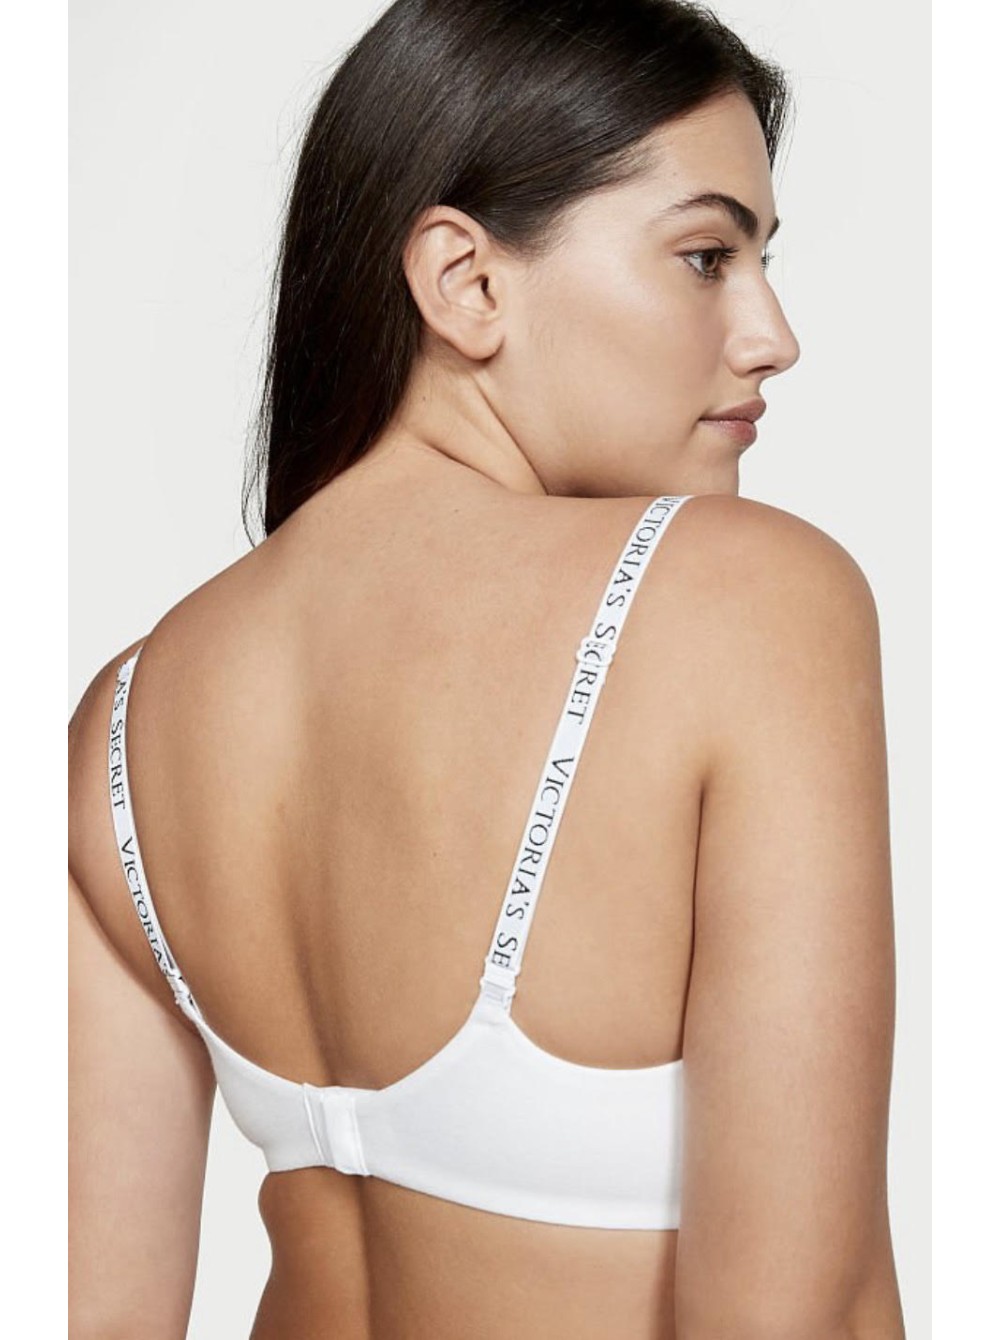 Купить Victoria's Secret Solid White 38DD T-Shirt Lightly Lined Wireless Bra  VS!!, цена 3 090 руб — (126010476625)